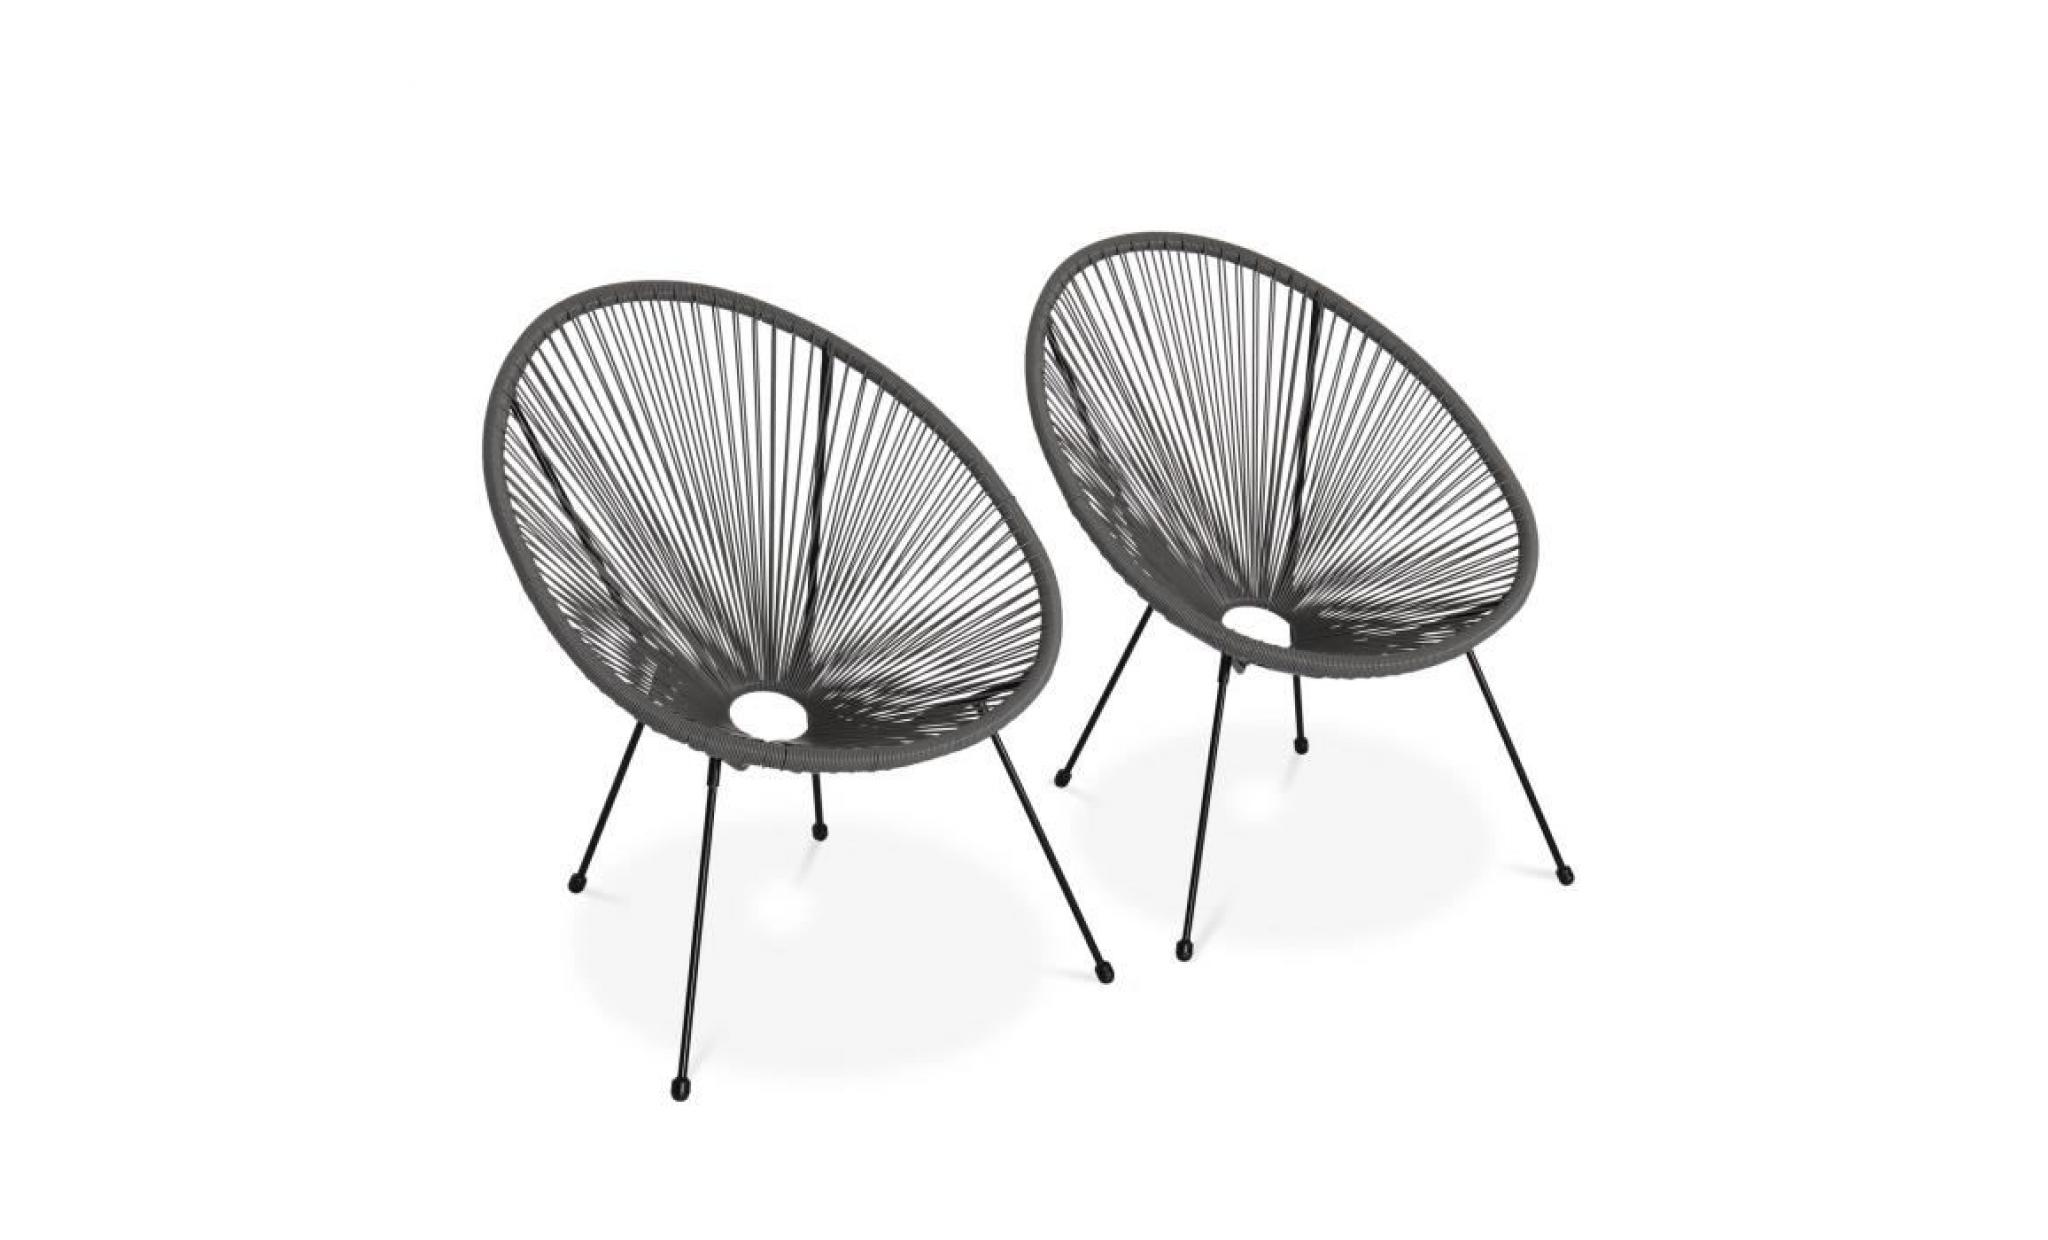 lot de 2 fauteuils design oeuf   acapulco taupe   fauteuils 4 pieds design rétro, cordage plastique, intérieur / extérieur